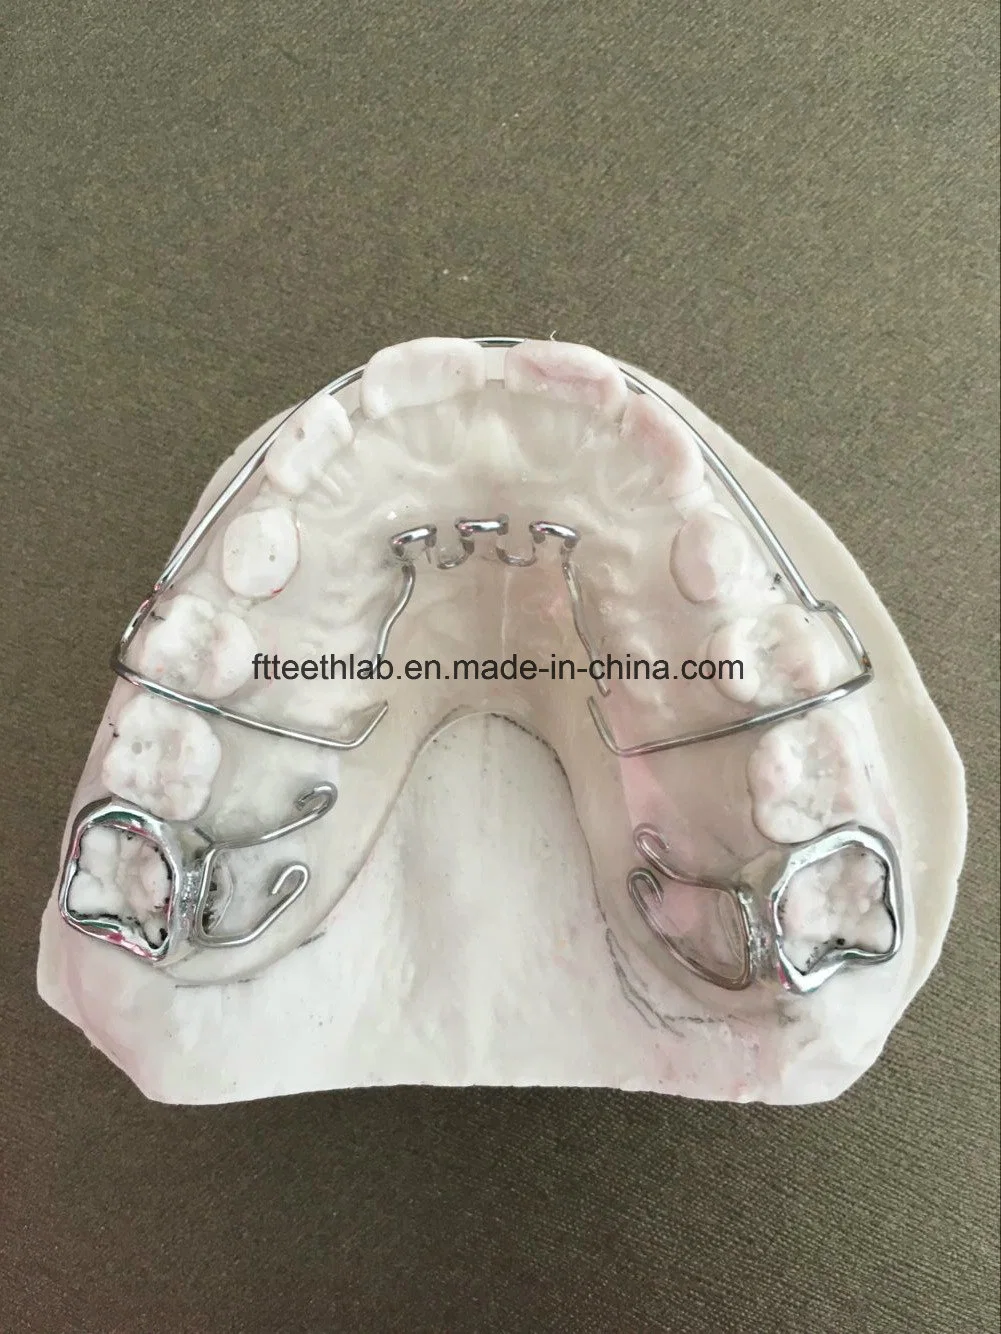 Aparelho de polegar para martelo demolidor da China Dental Lab